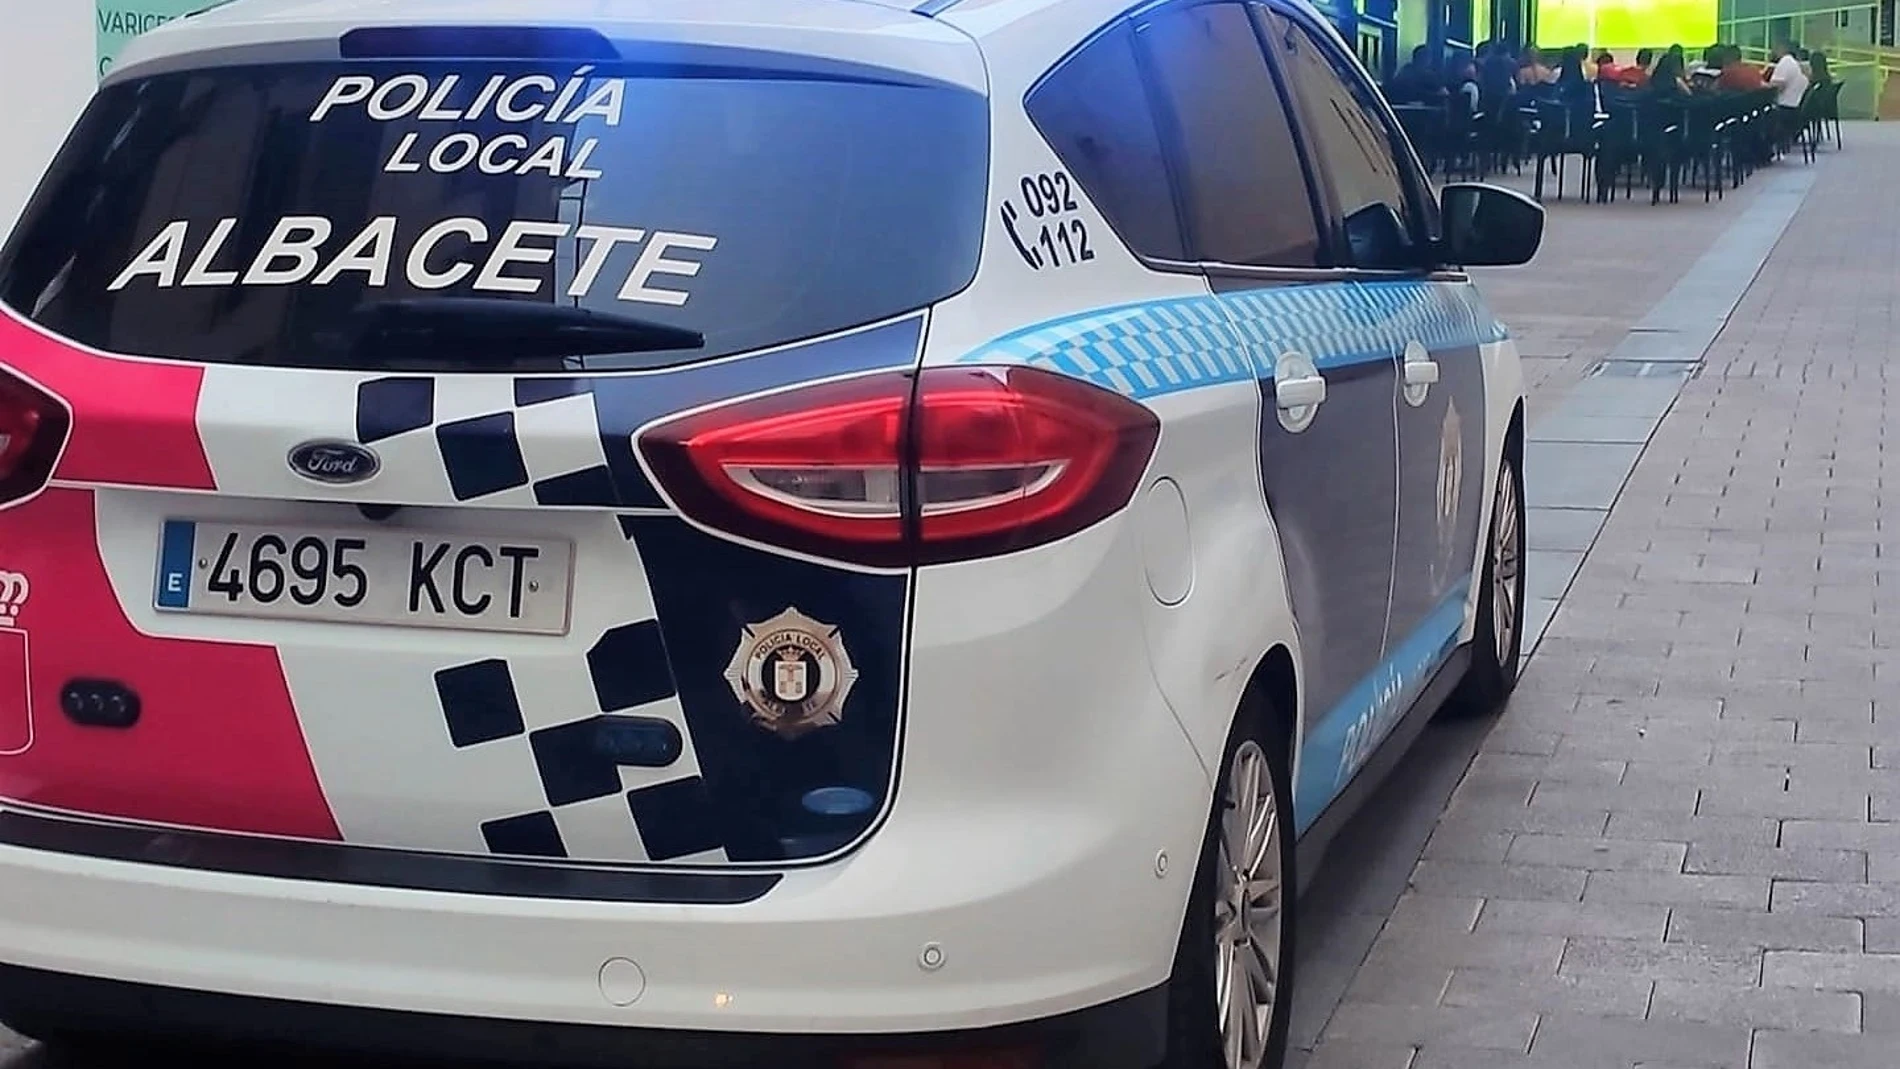  Imagen de archivo de un vehículo de la Policía Local de Albacete 